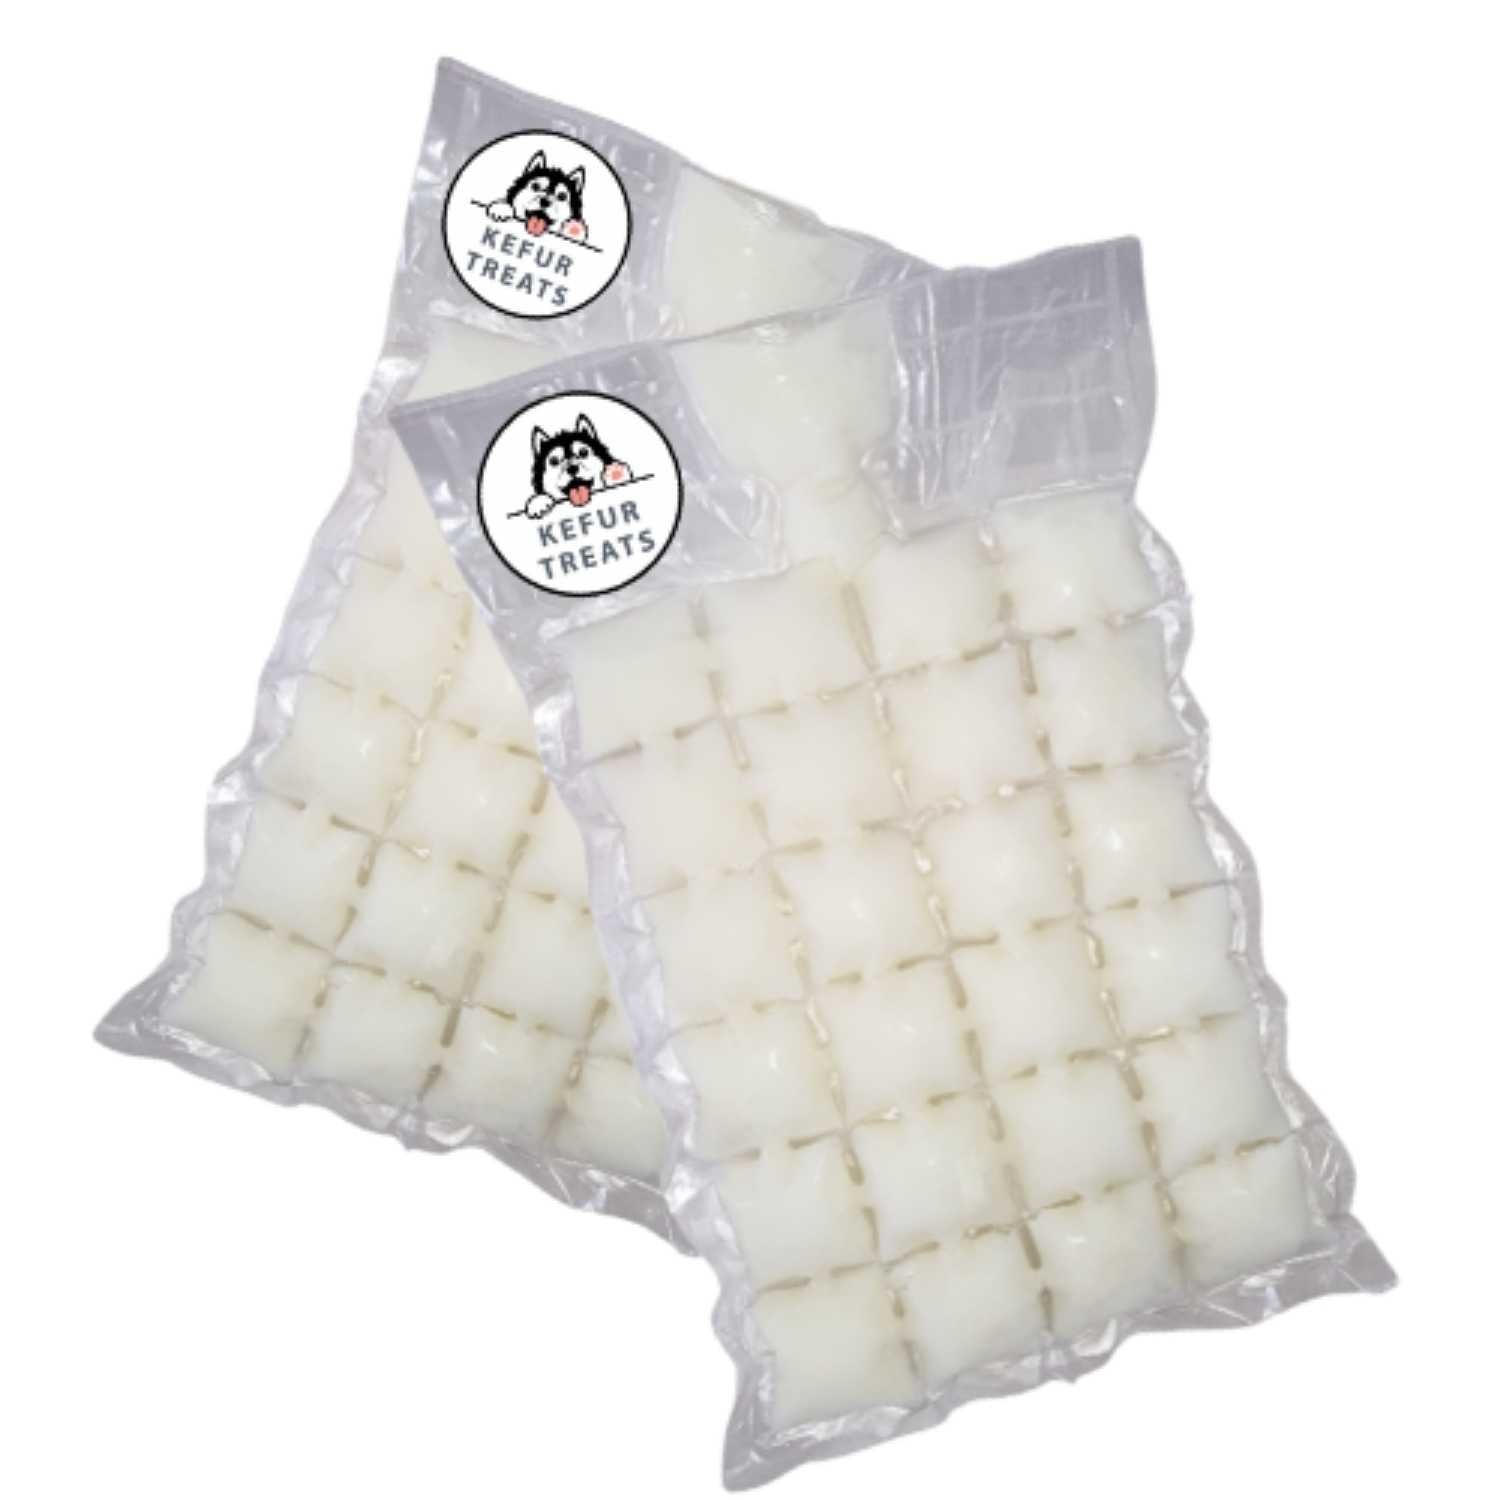 Milk Kefir Kefur Treats Twin Frozen Pack 24 cubes Original